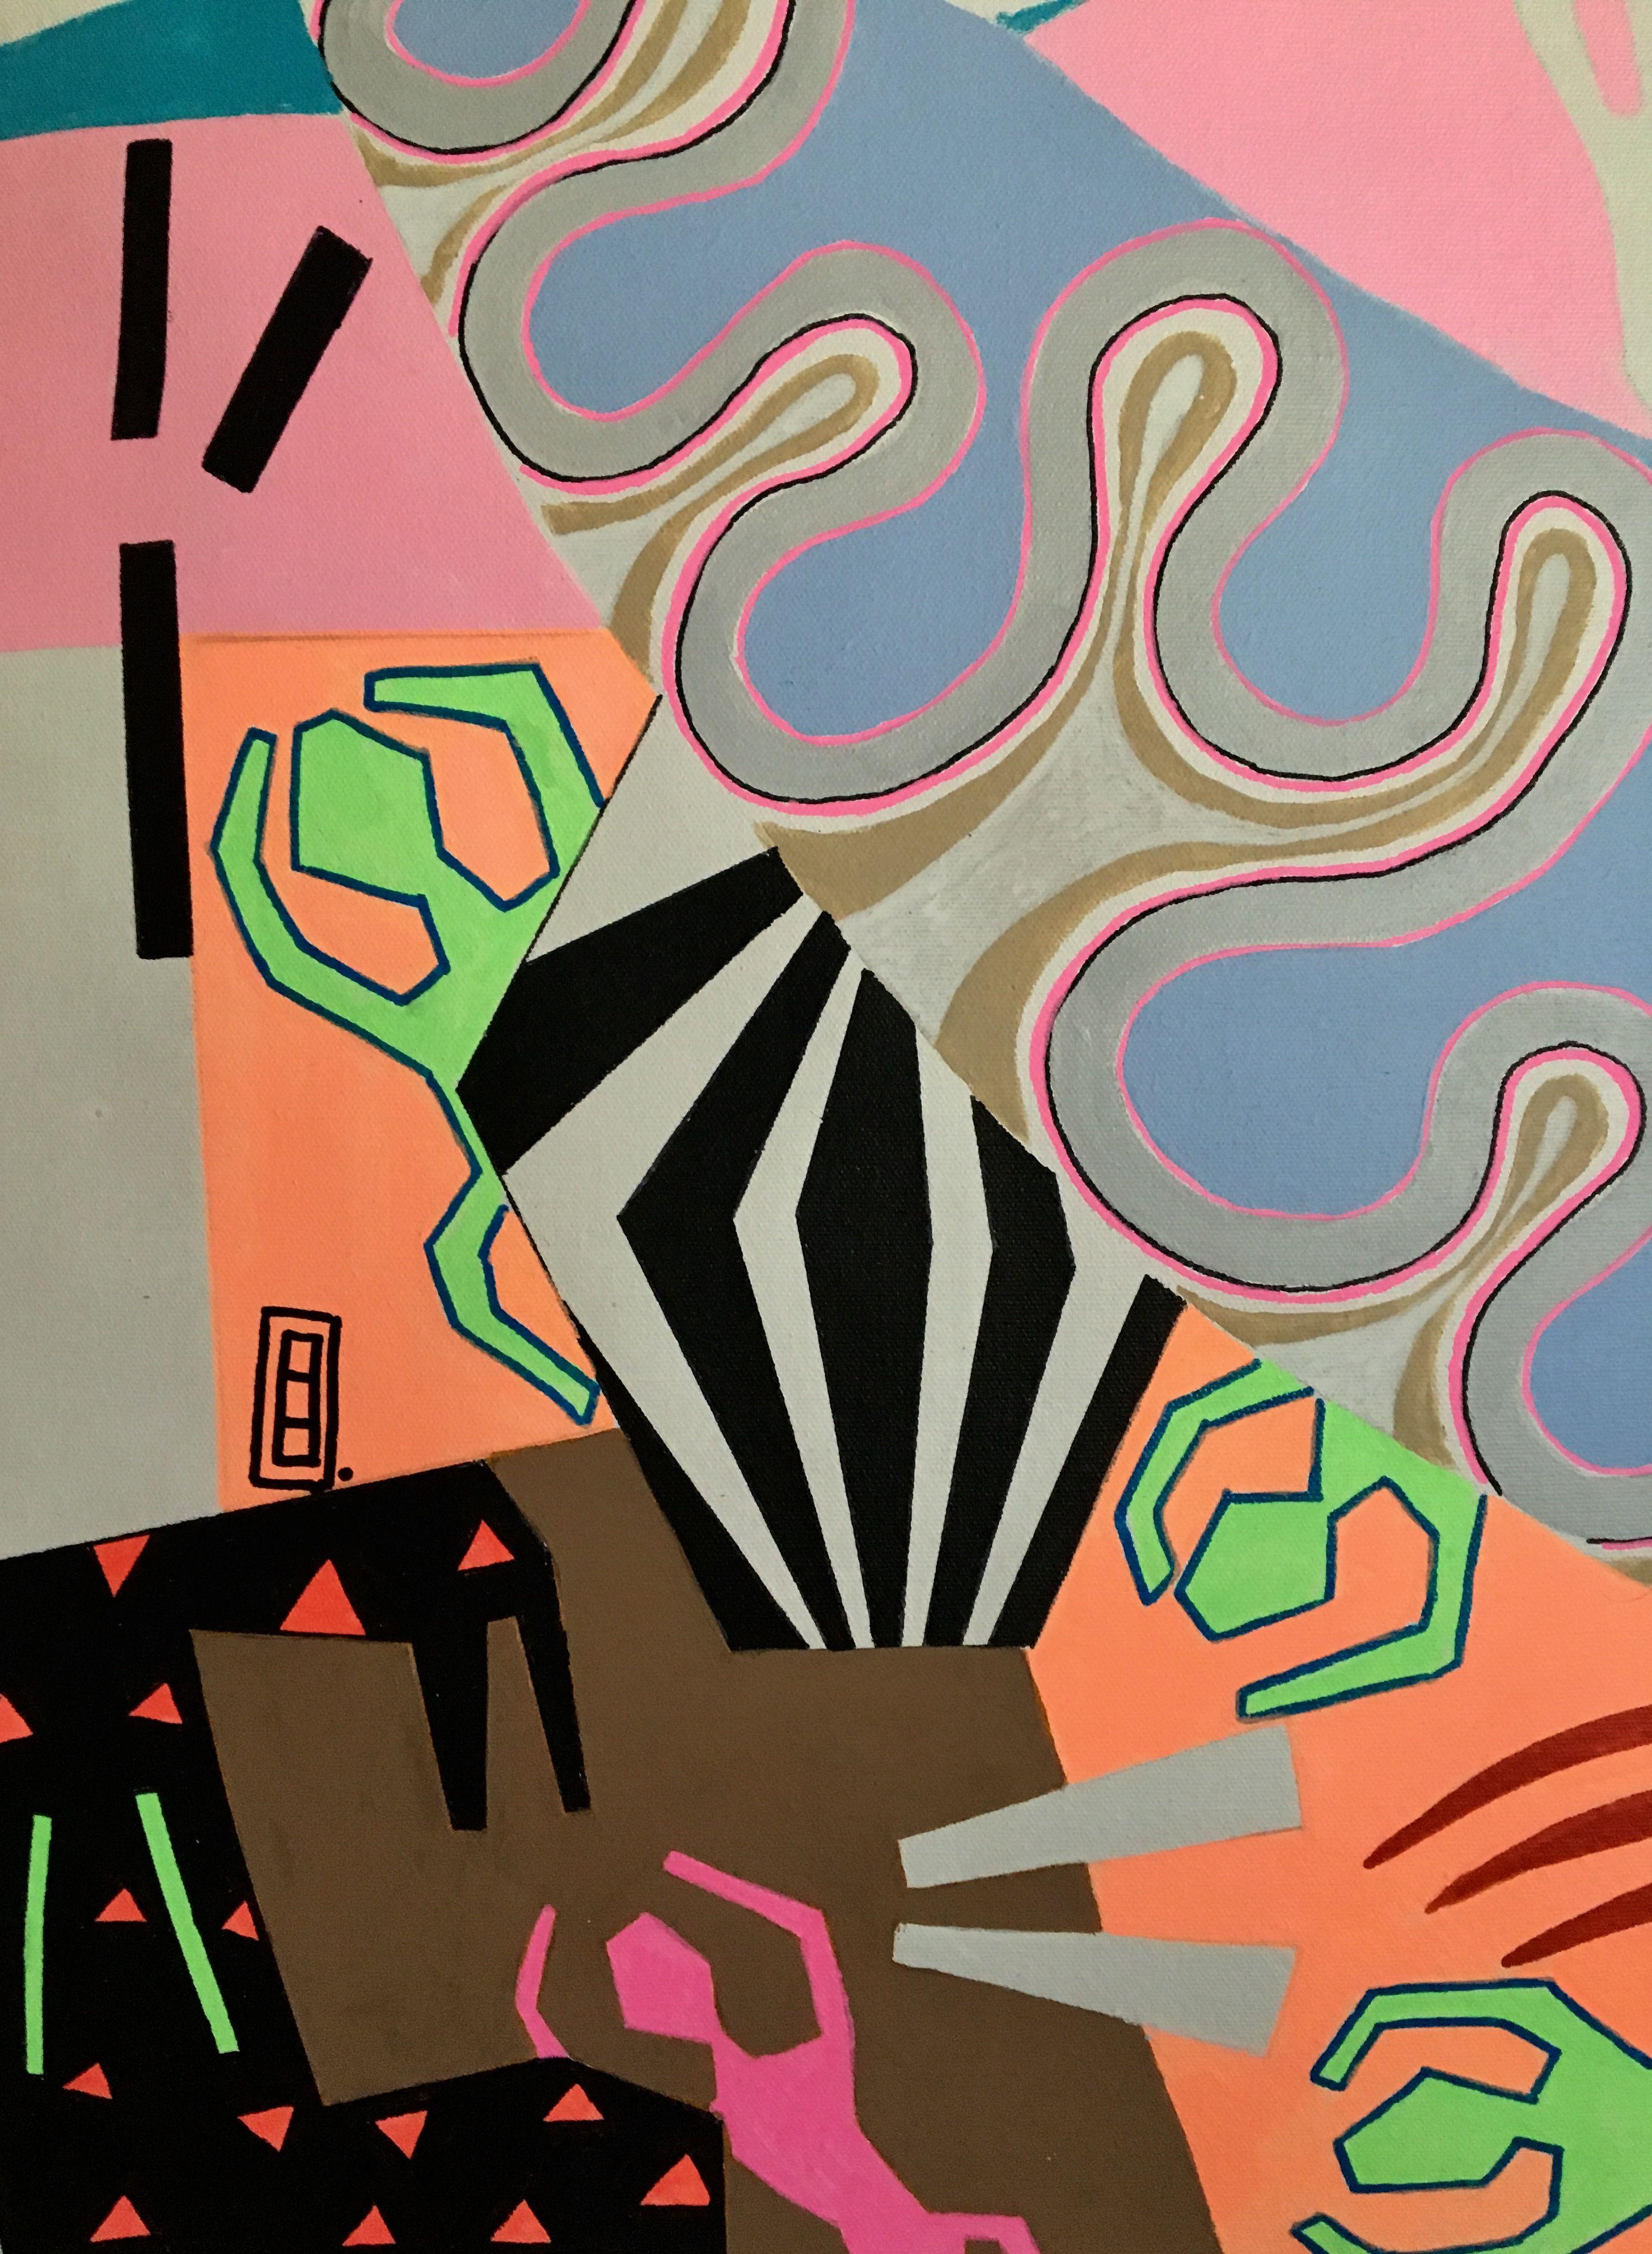 acrylmalerei auf der Leinwand, inspiriert von afrikanischen, mexikanischen und zeitgenössischen Kunstrichtungen. CANVAS 173 drückt afrikanisch anmutende Figuren auf einem Hintergrund aus, der stark von Matisse's Collagen inspiriert ist, aber dieses